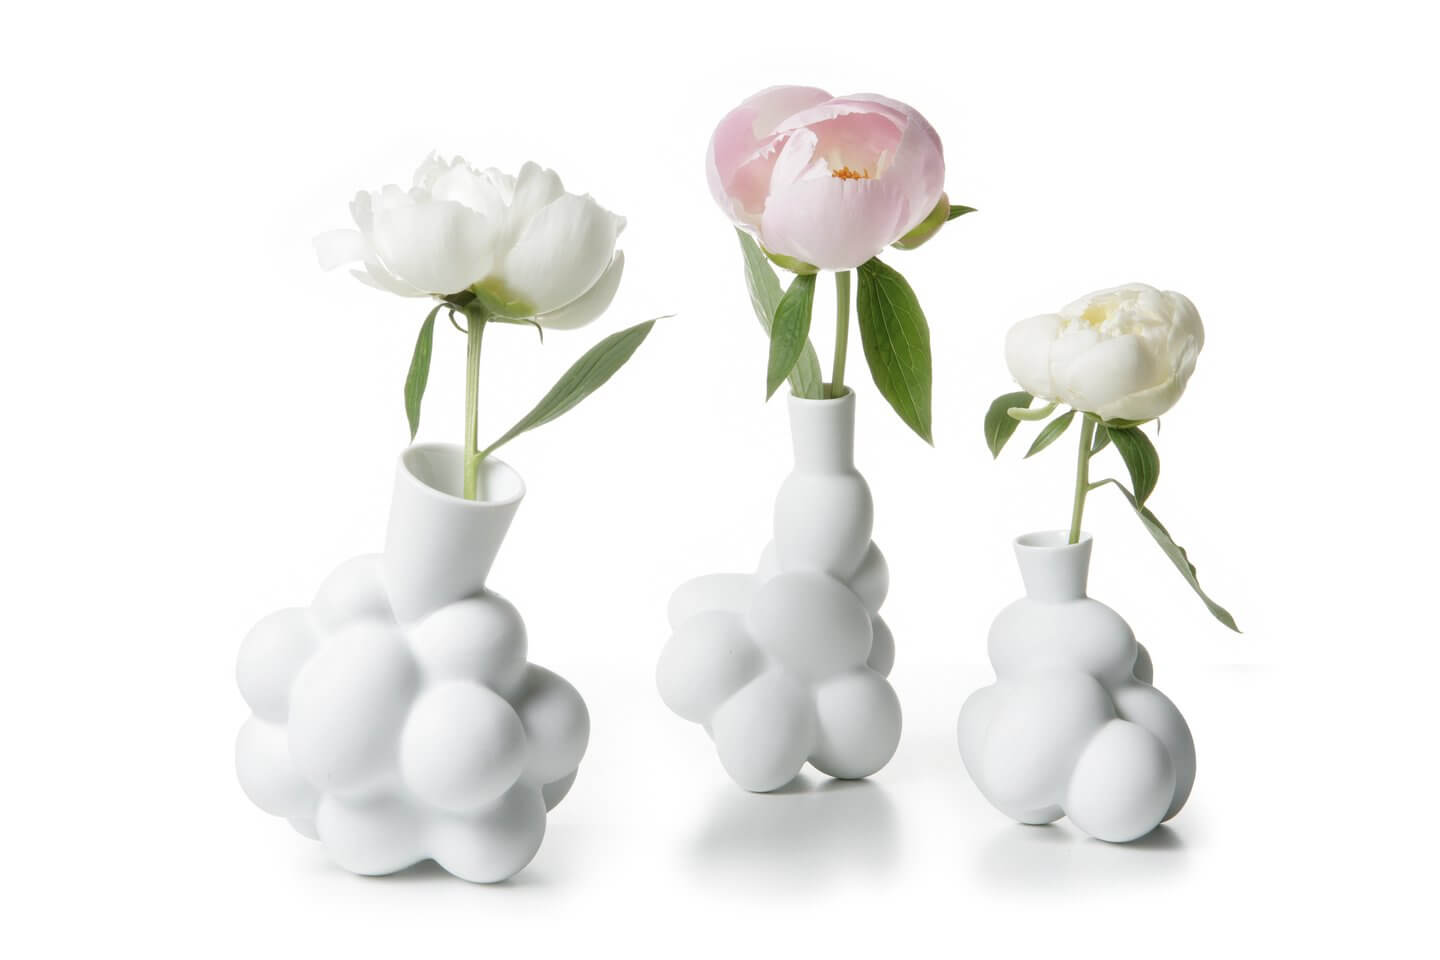 Egg vases